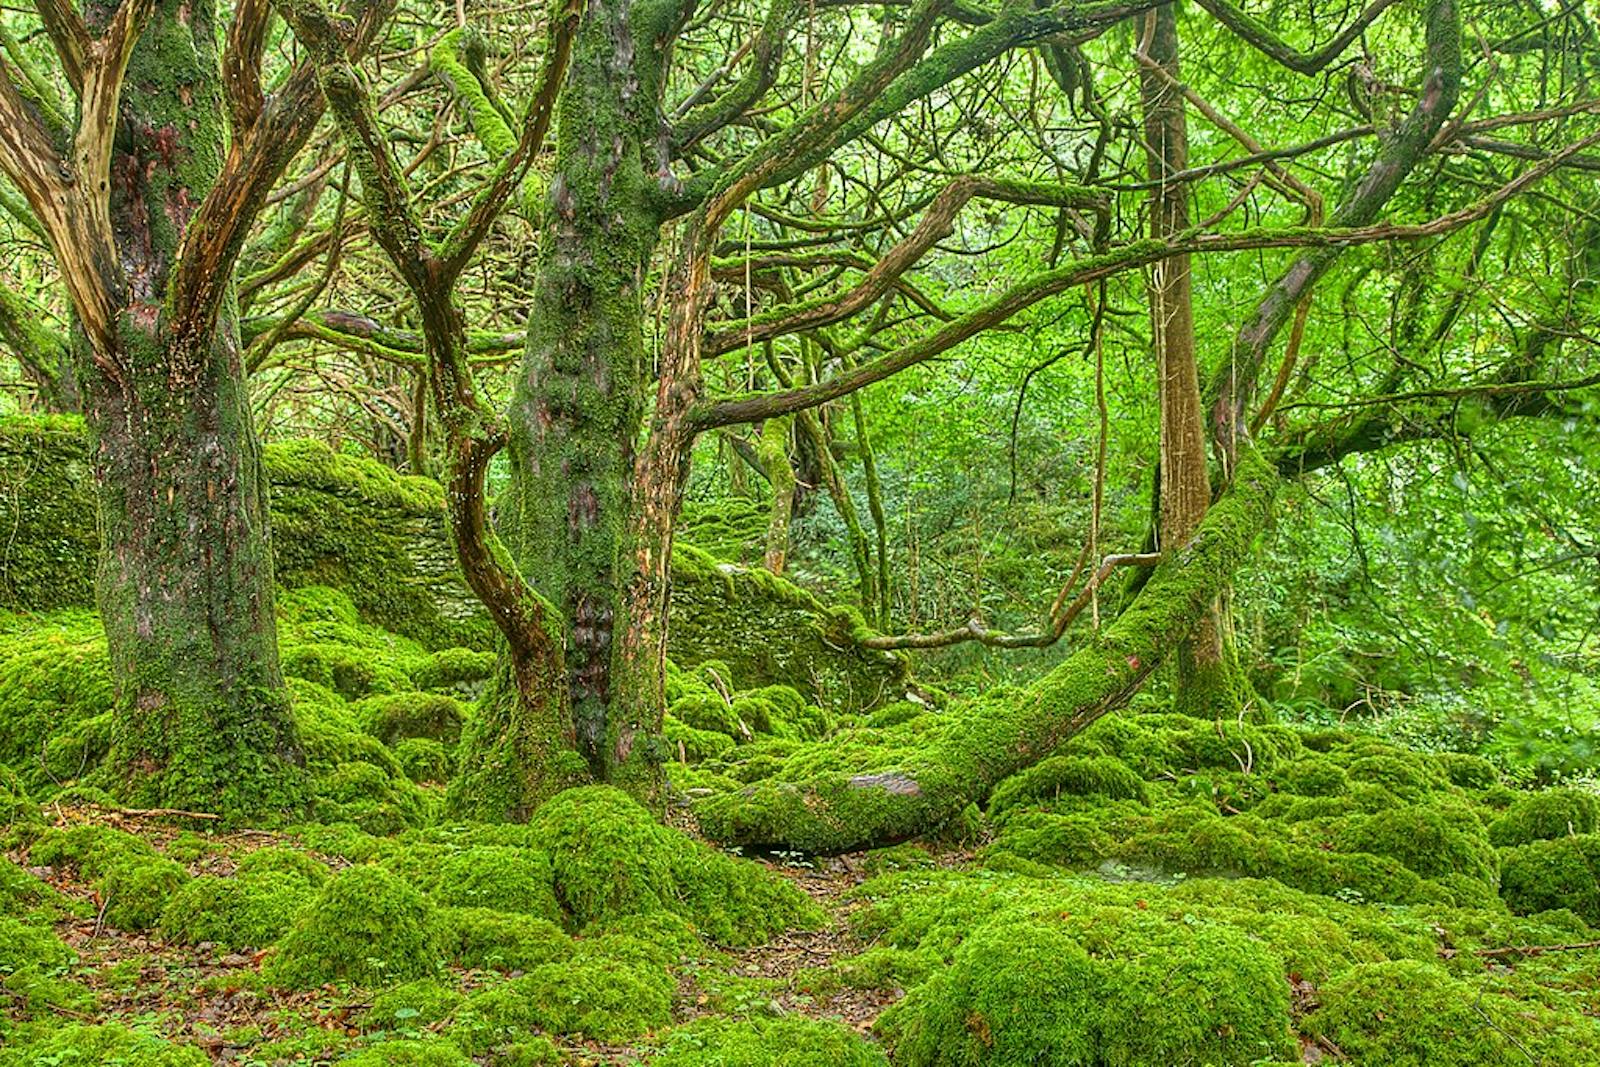 New Britain-New Ireland Lowland Rainforests